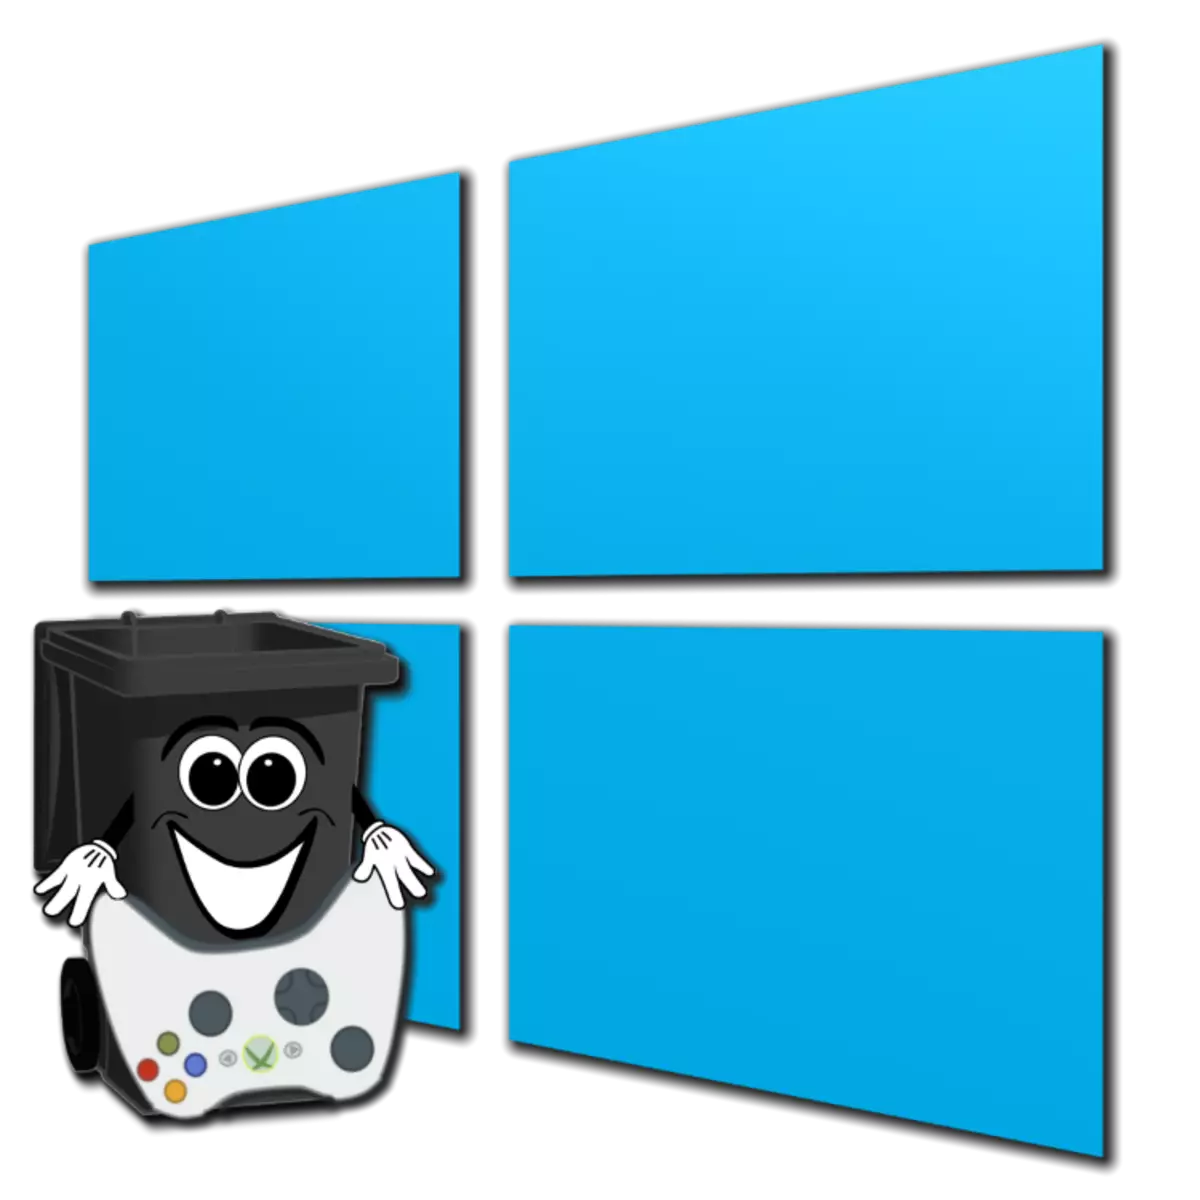 Hvernig Til Fjarlægja leikinn á Windows 10